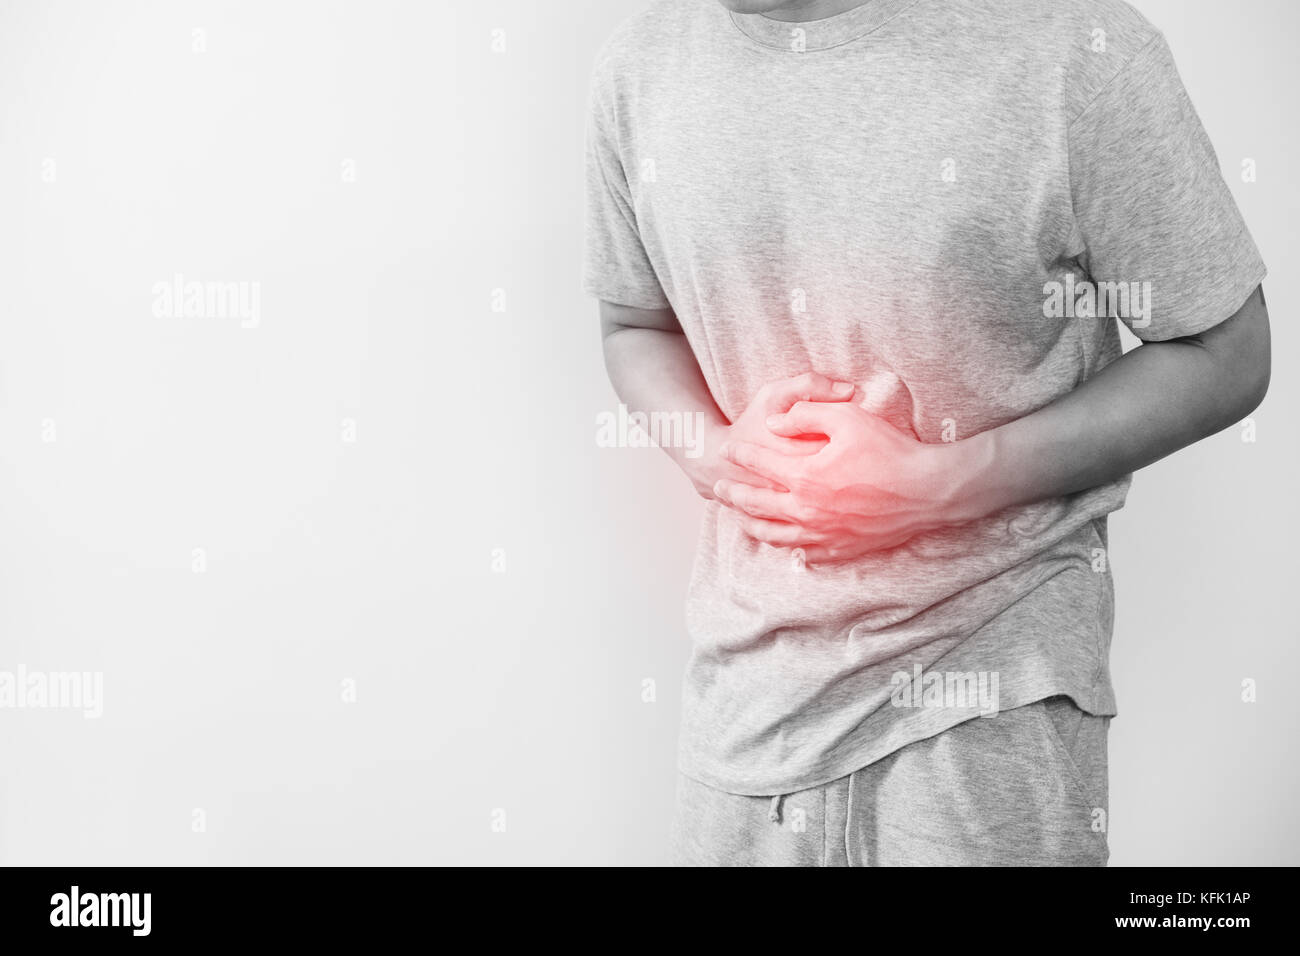 Un hombre presionando su estómago, con resaltado rojo de dolor de estómago y demás enfermedades estomacales concepto, sobre fondo blanco con espacio de copia Foto de stock